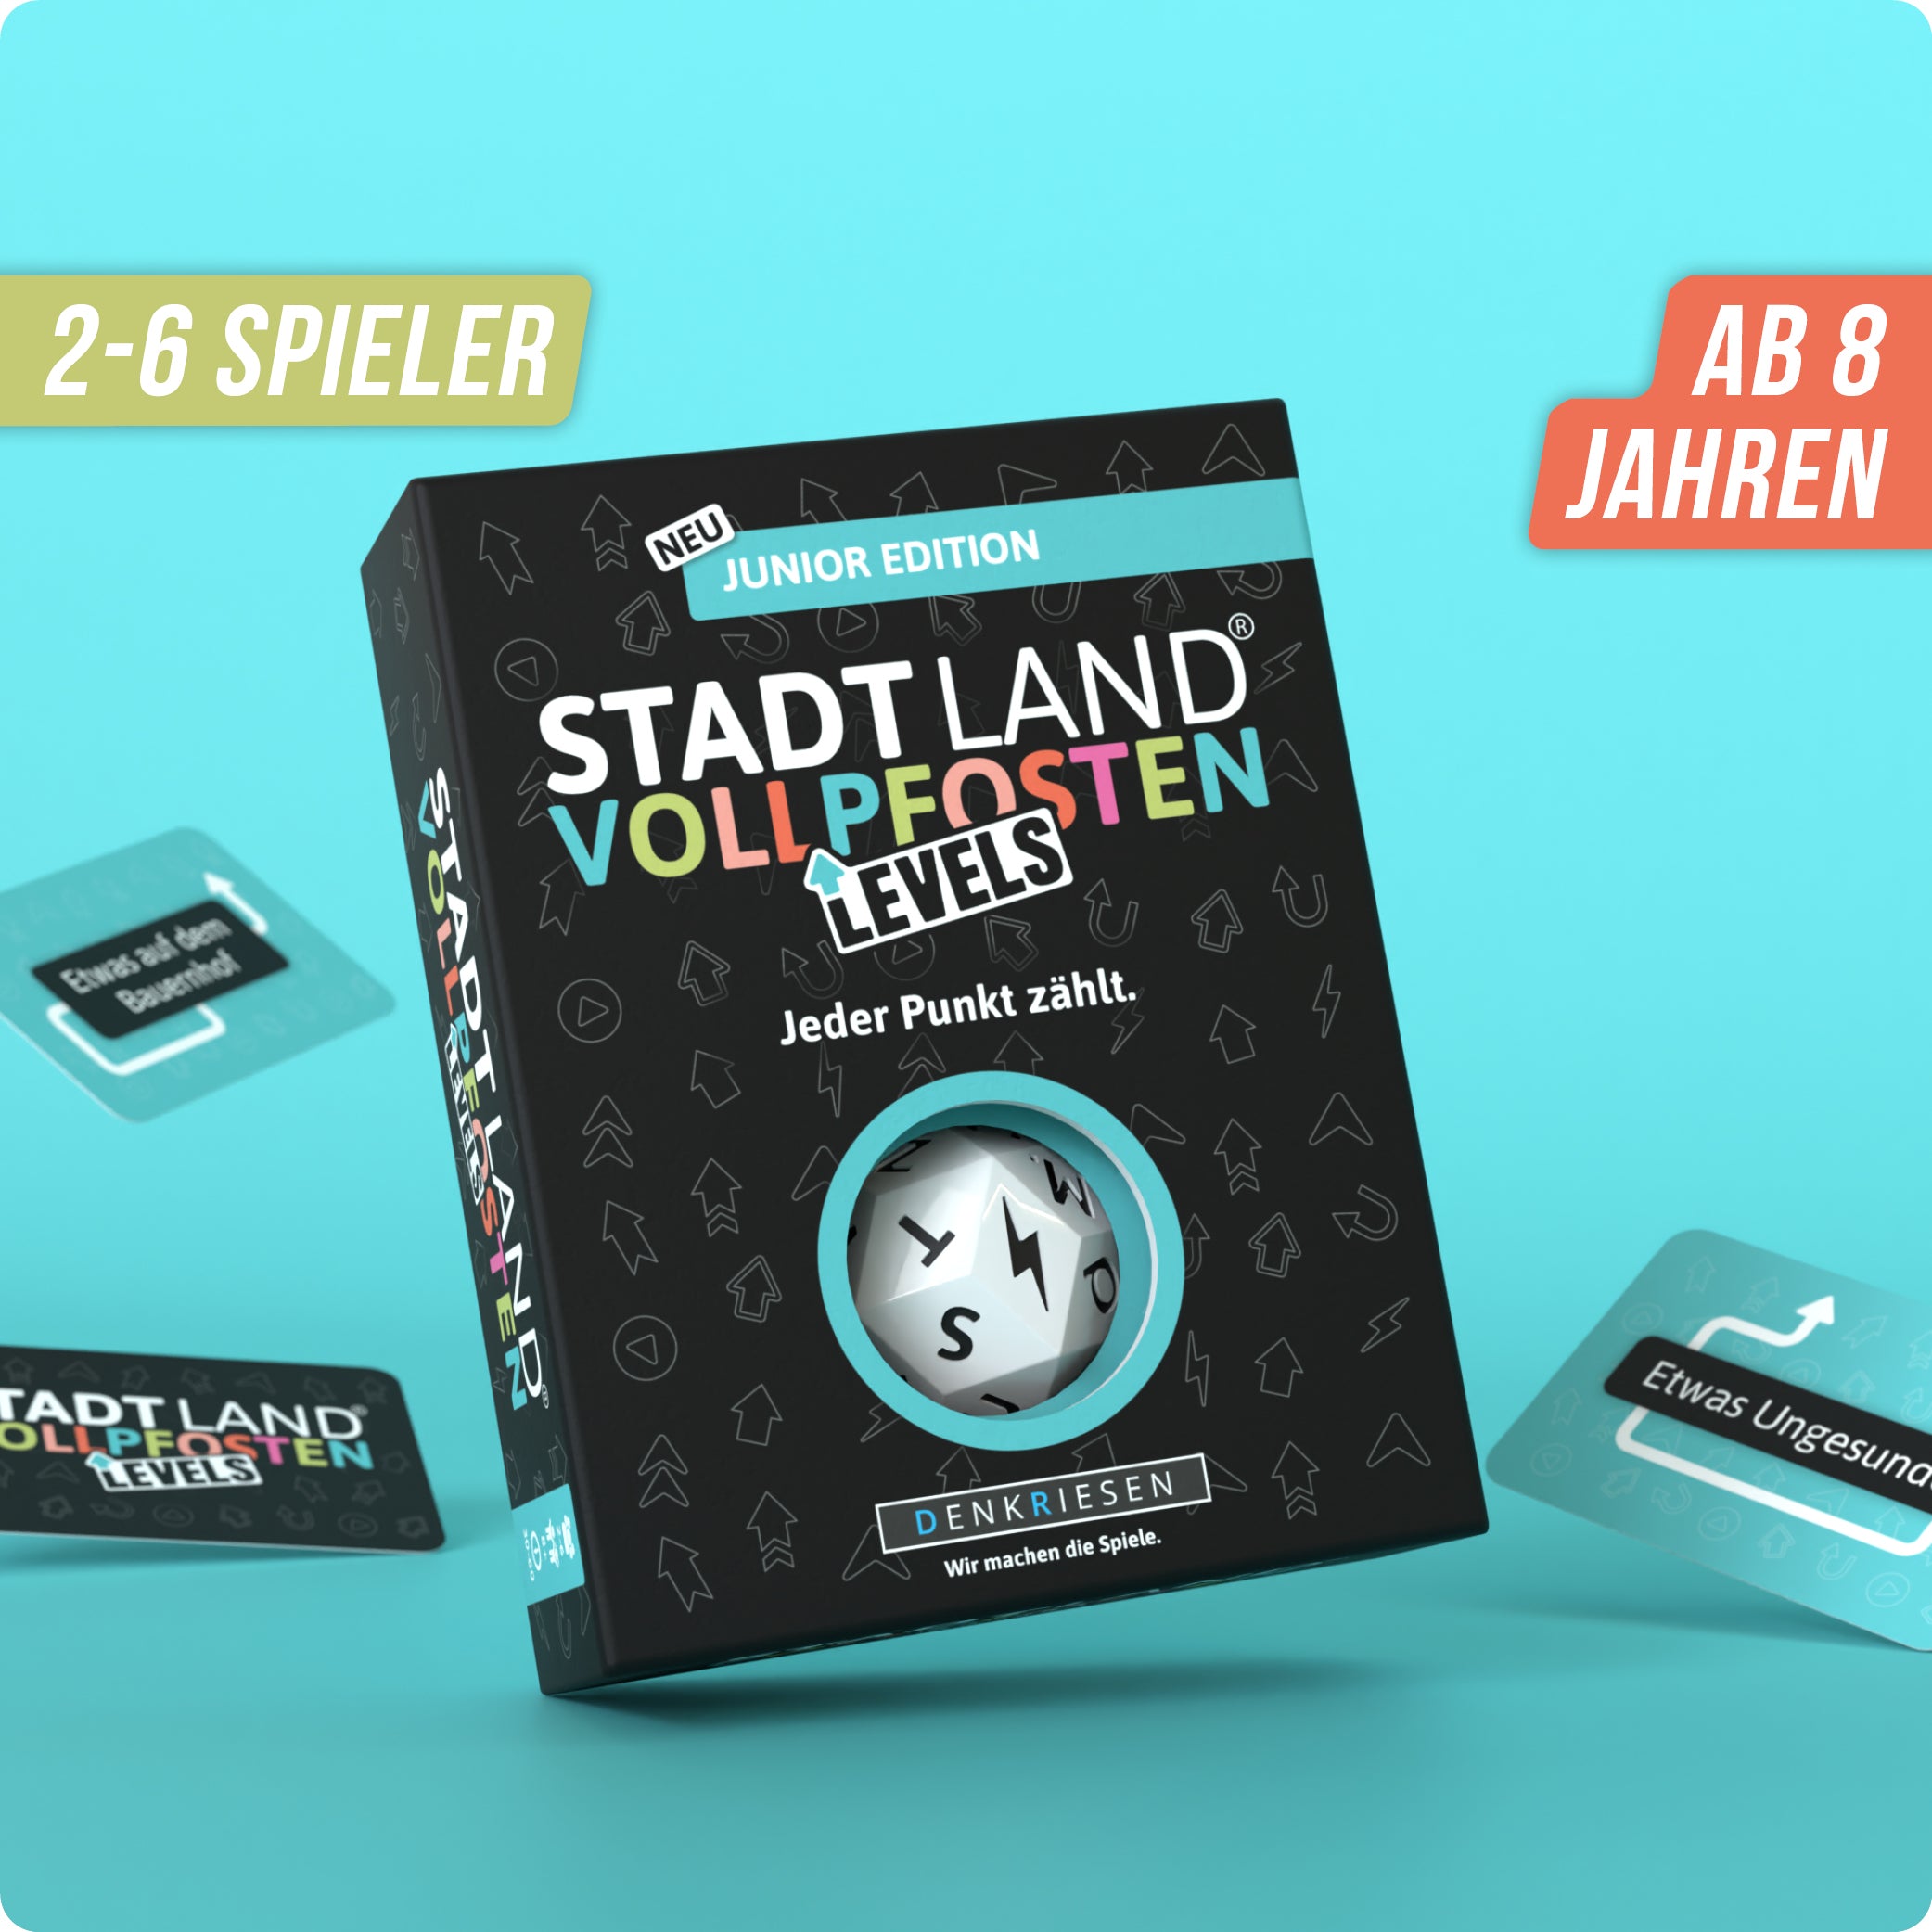 Stadt Land Vollpfosten® Levels | Junior Edition – "Jeder Punkt zählt."